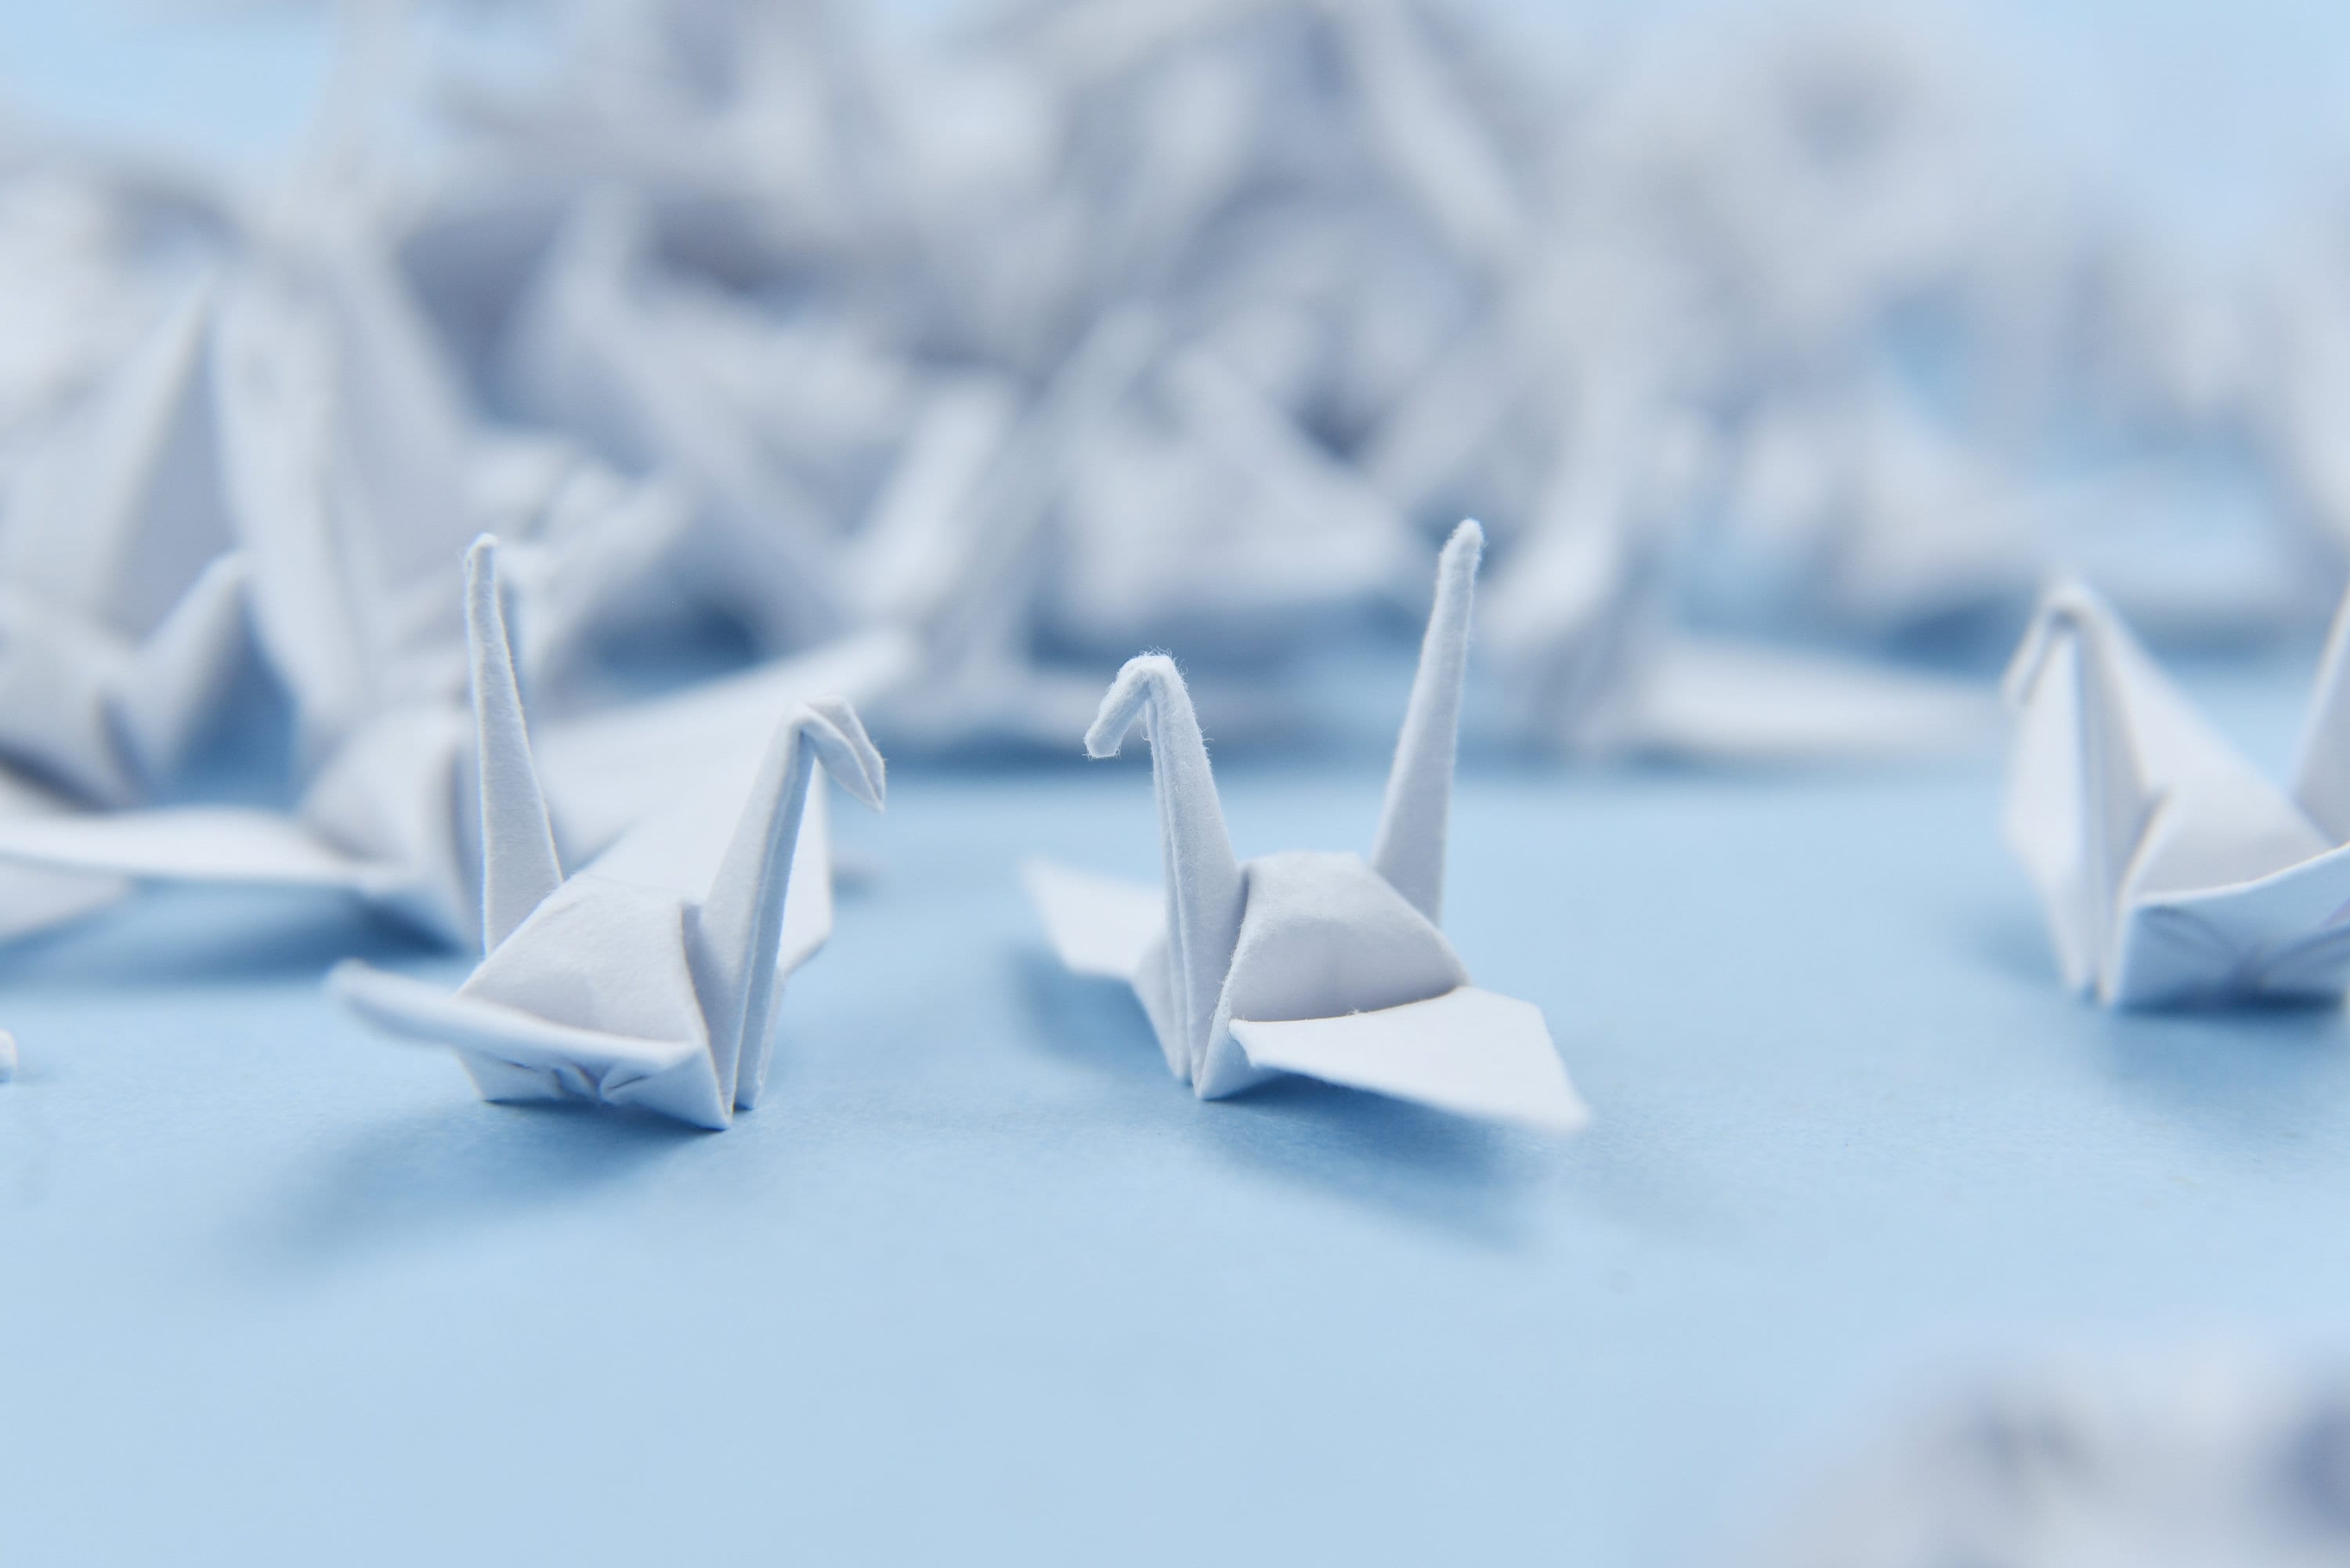 1000 Grullas de papel de origami blanco - Pájaro pequeño - 1.5x1.5 pulgadas - Regalo de decoraciones de boda por OrigamiPolly